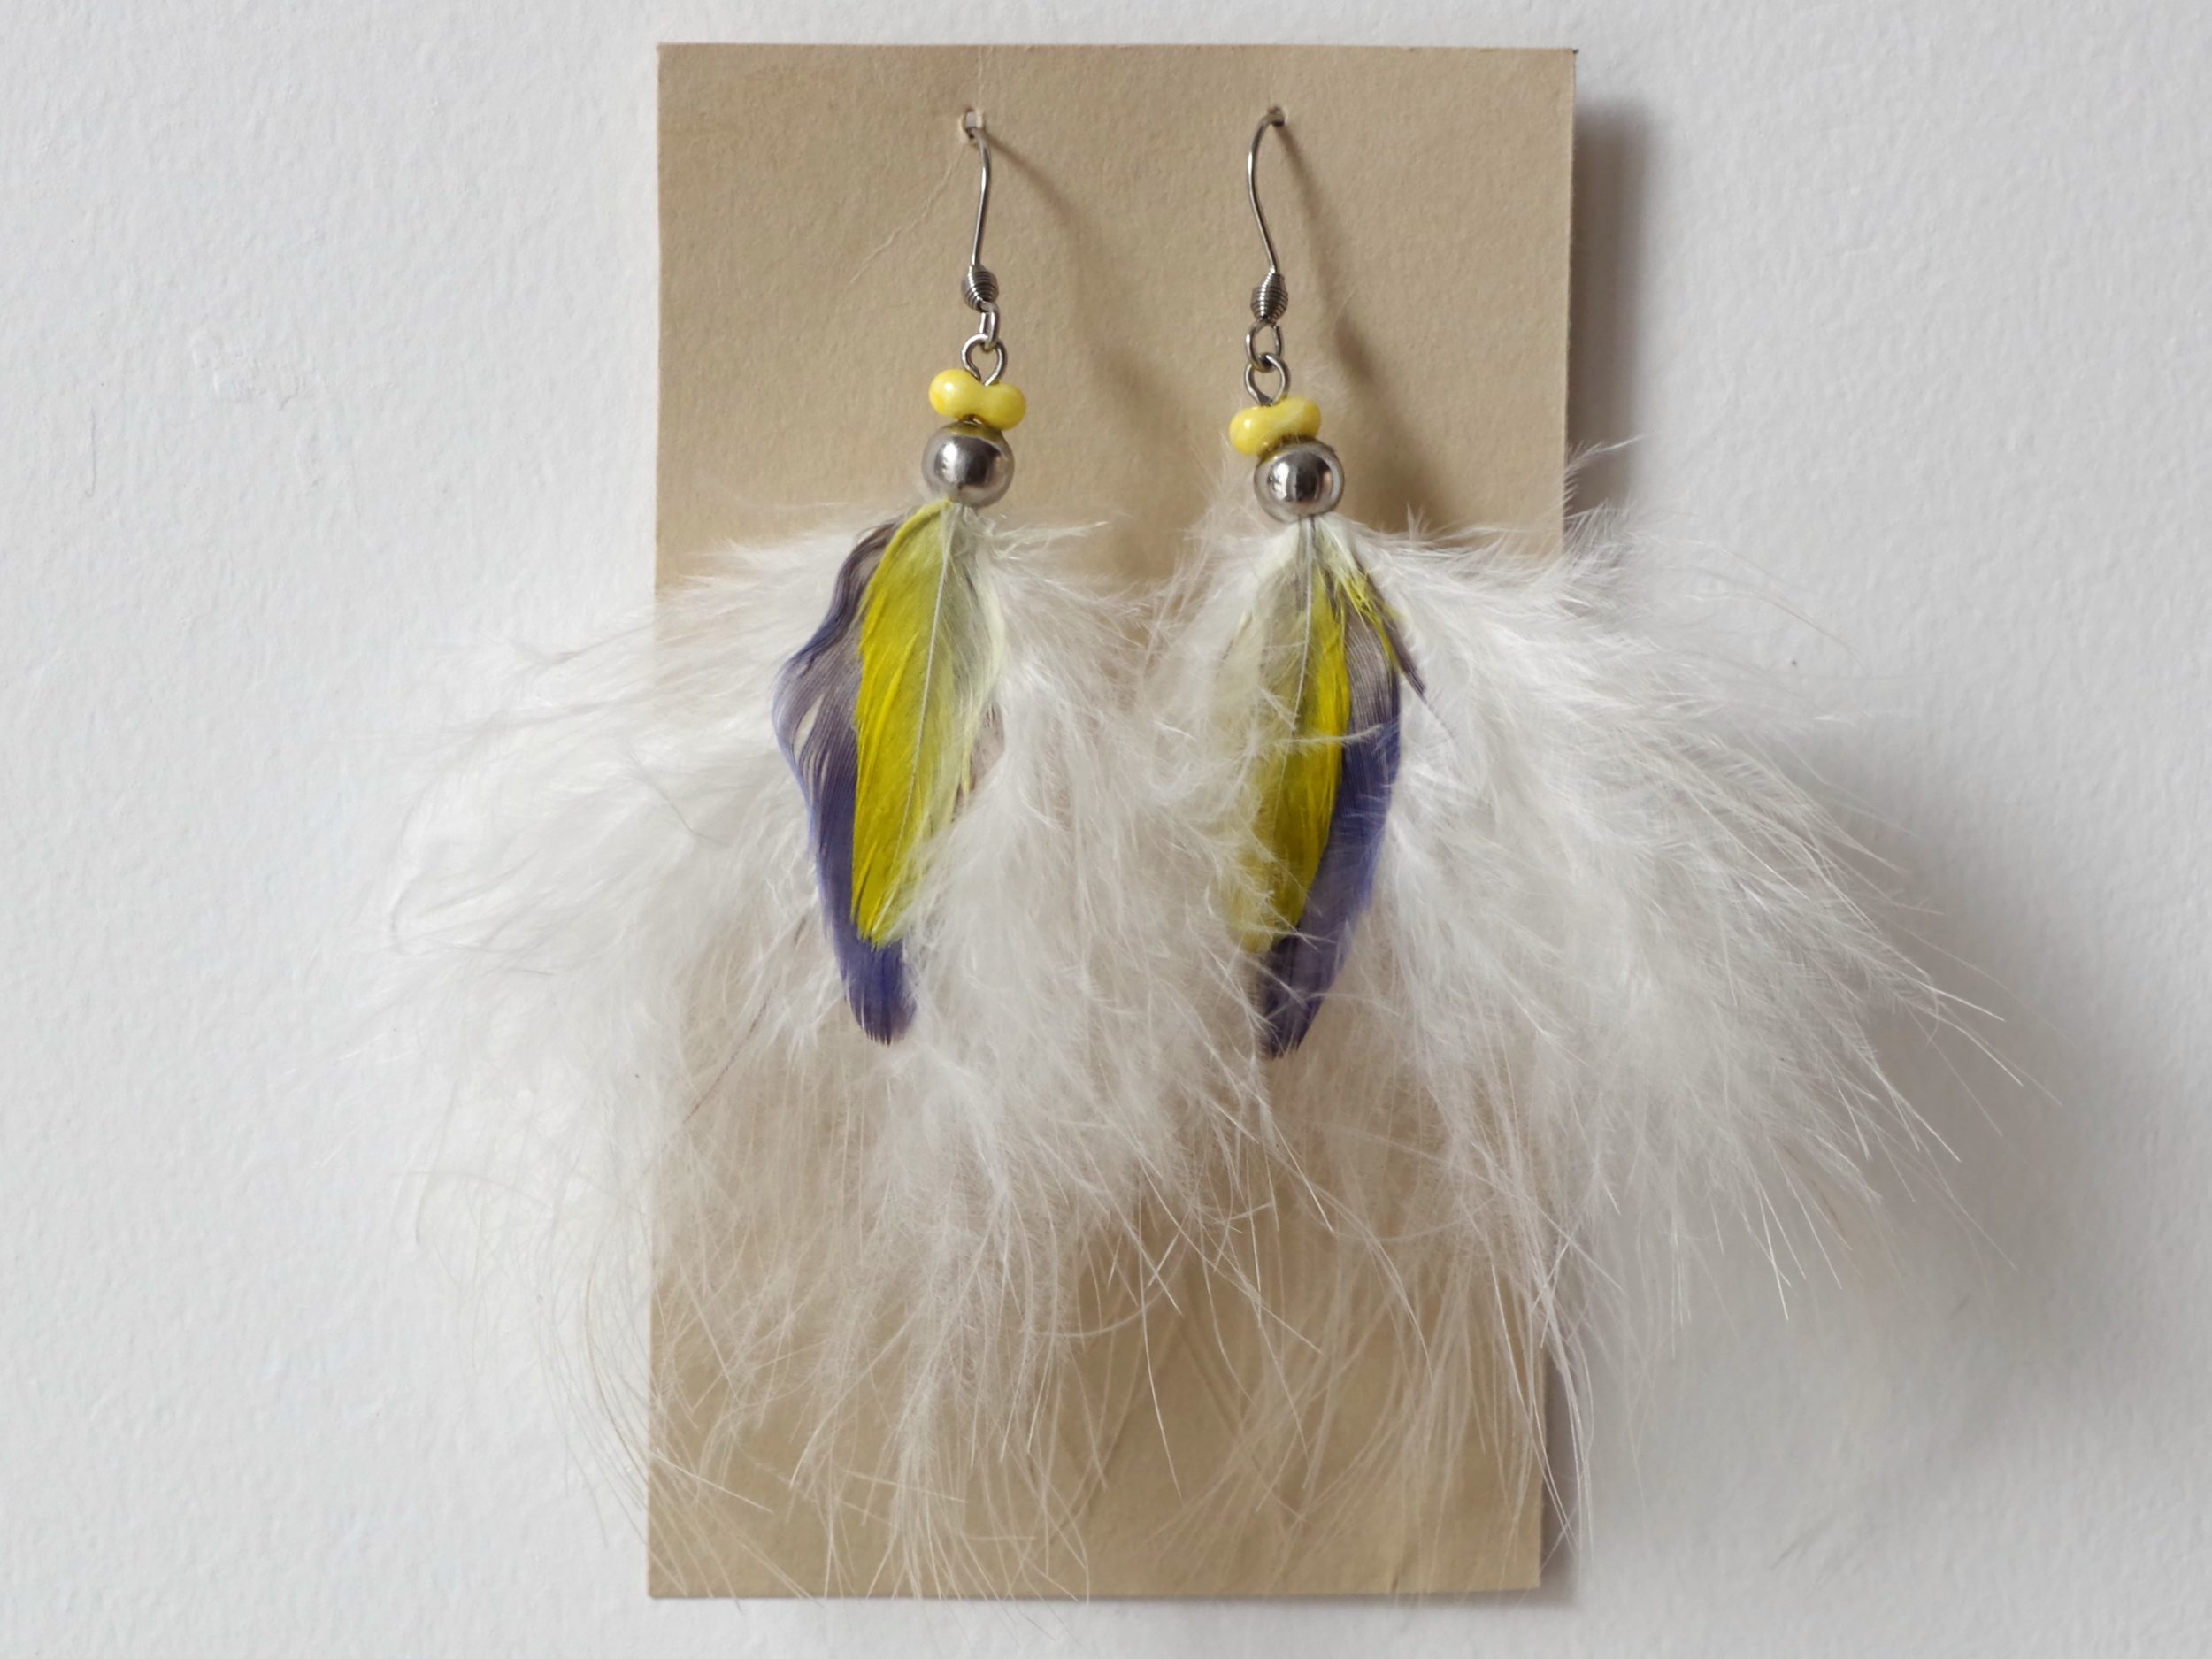 boucles d'oreilles très vapporeuses : plumes duveteuses blanches, avec deux plumes superposées des couleur vives bleu et jaune